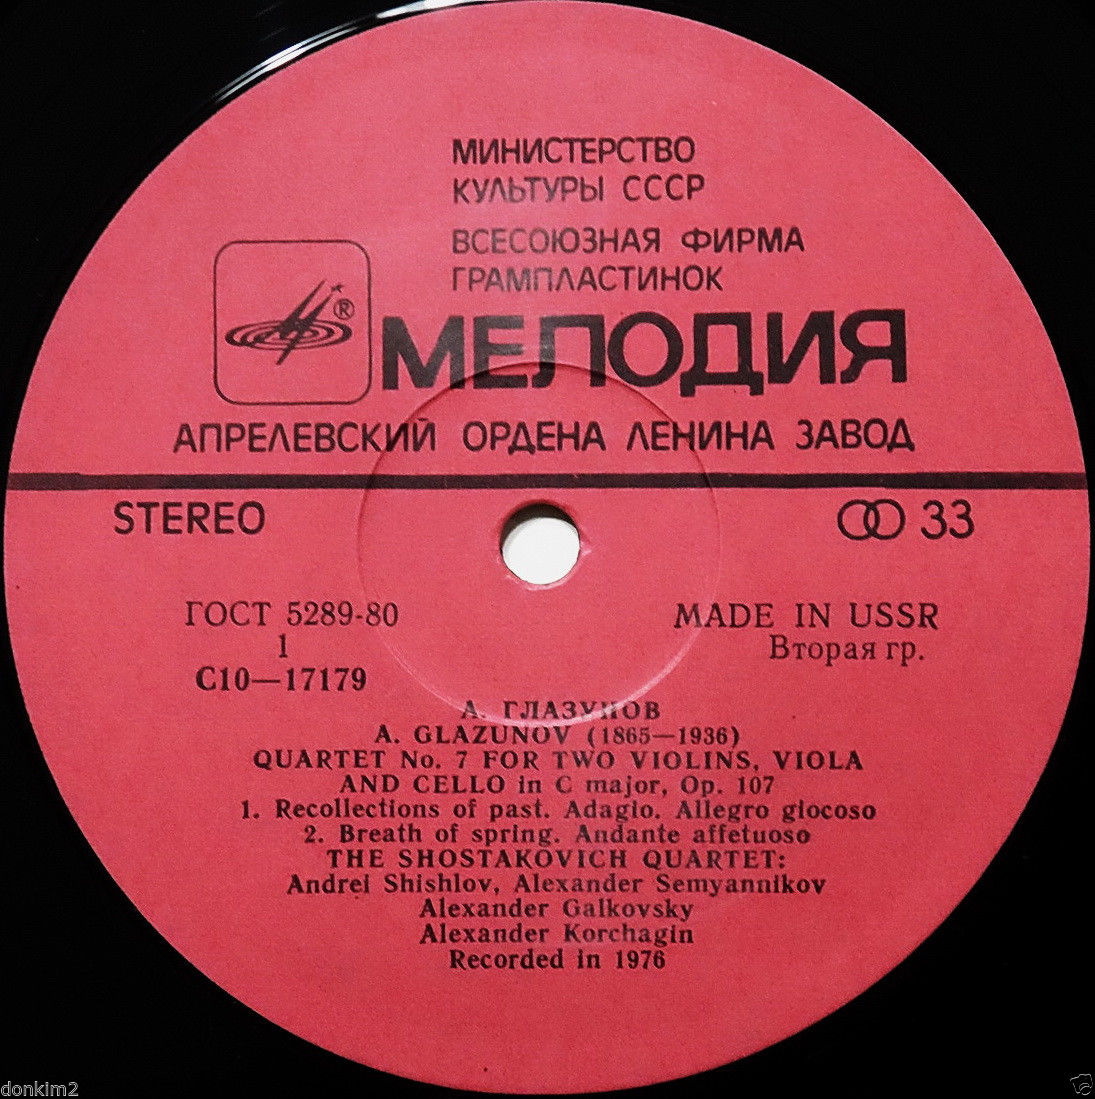 А. ГЛАЗУНОВ (1865-1936): Квартет № 7 для двух скрипок, альта и виолончели до минор, соч. 107.